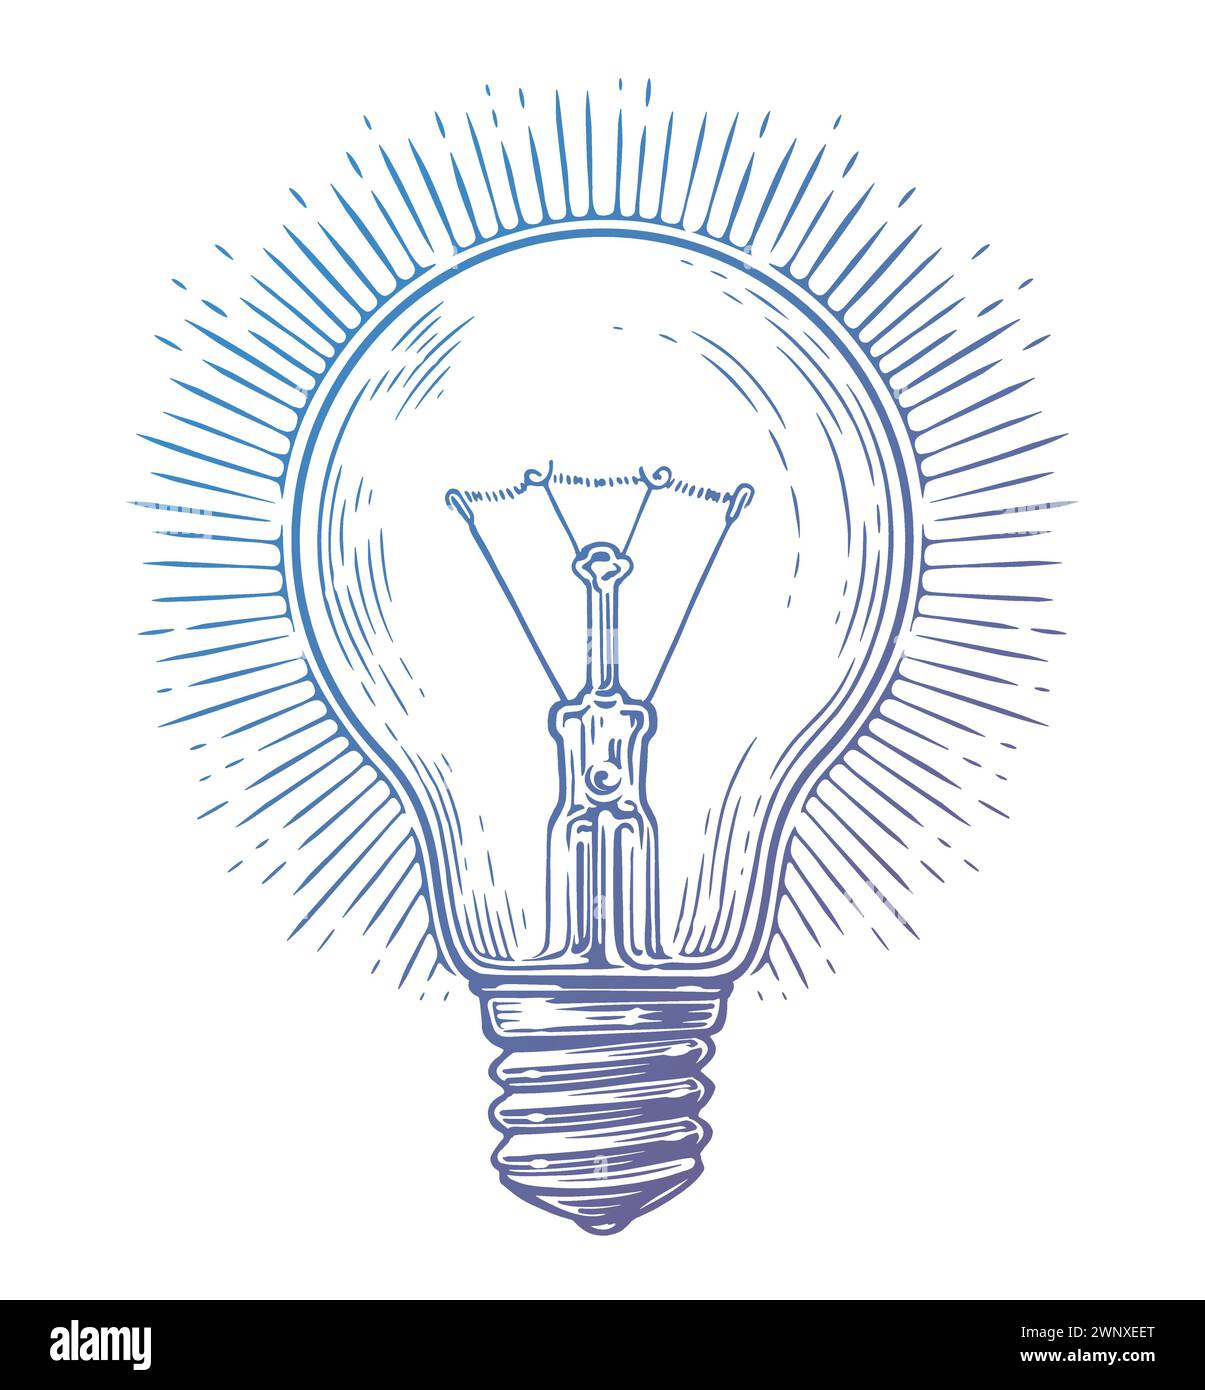 Ampoule incandescente rétro lumineuse incandescente avec rayons. Illustration vectorielle vintage dessinée à la main Illustration de Vecteur